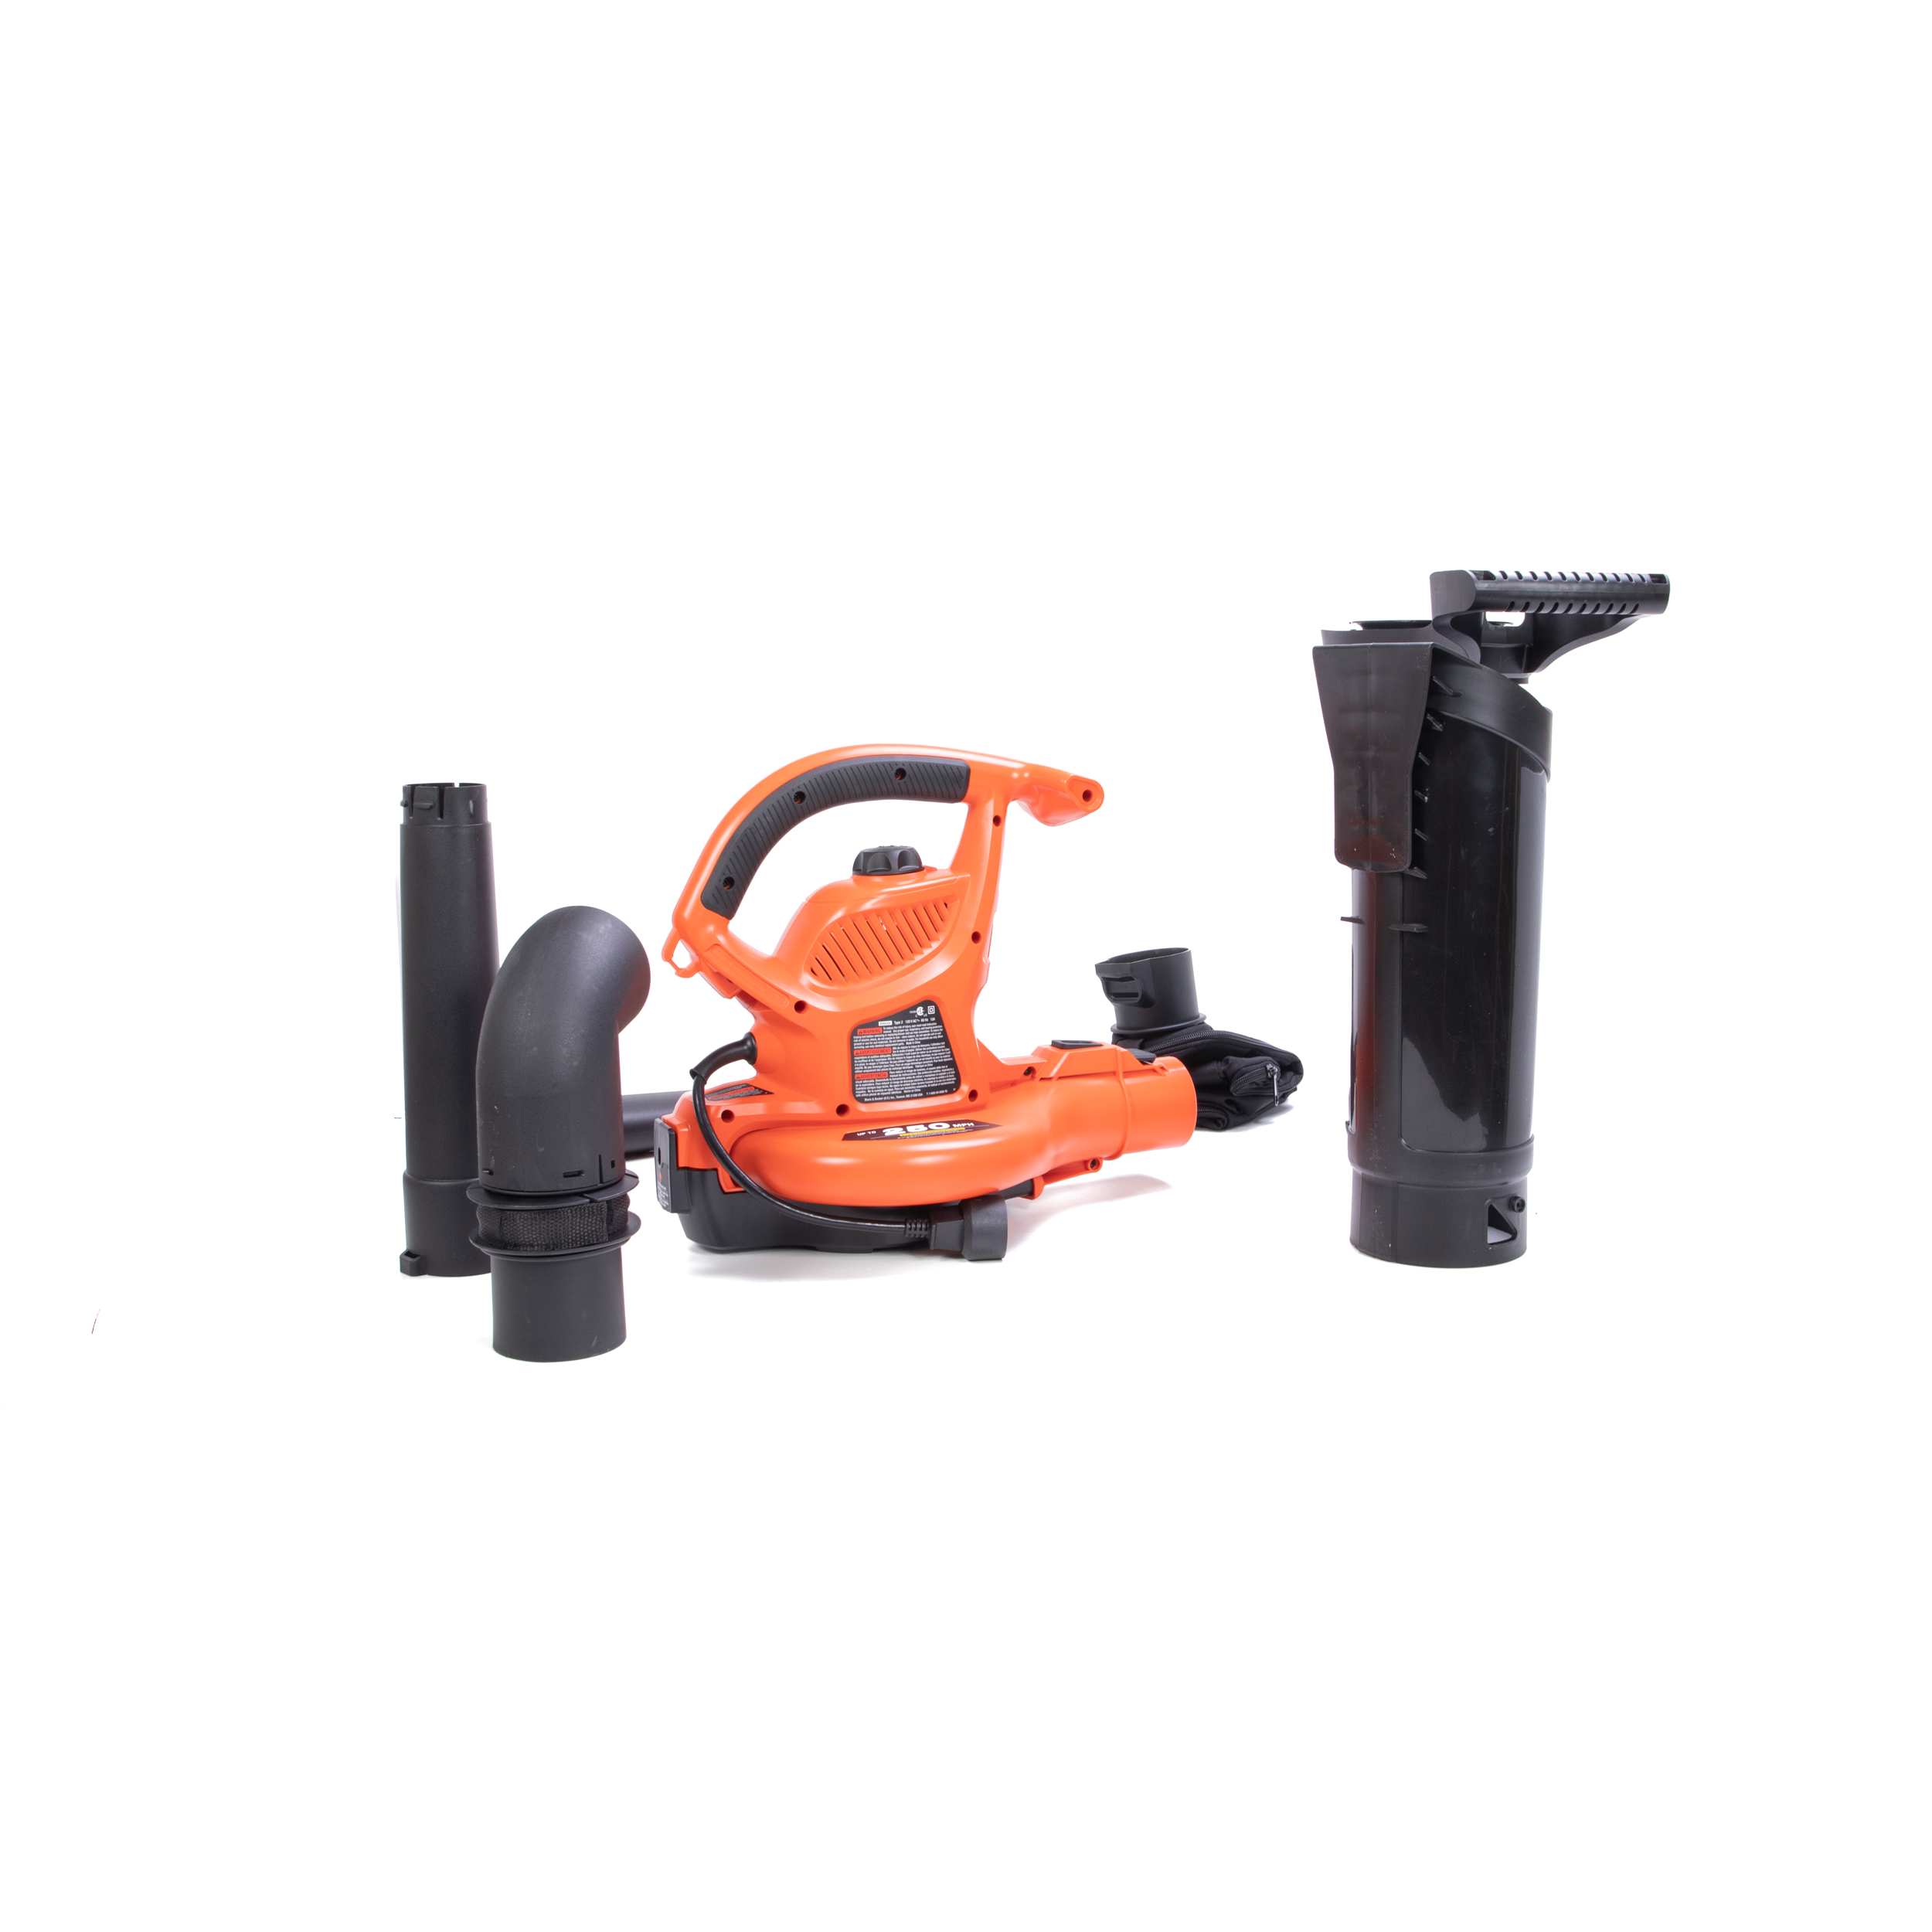  BLACK+DECKER Leaf Blower & Leaf Vacuum, 3-in-1, 12-Amp,  250-MPH, 400-CFM (BV6000) : Patio, Lawn & Garden